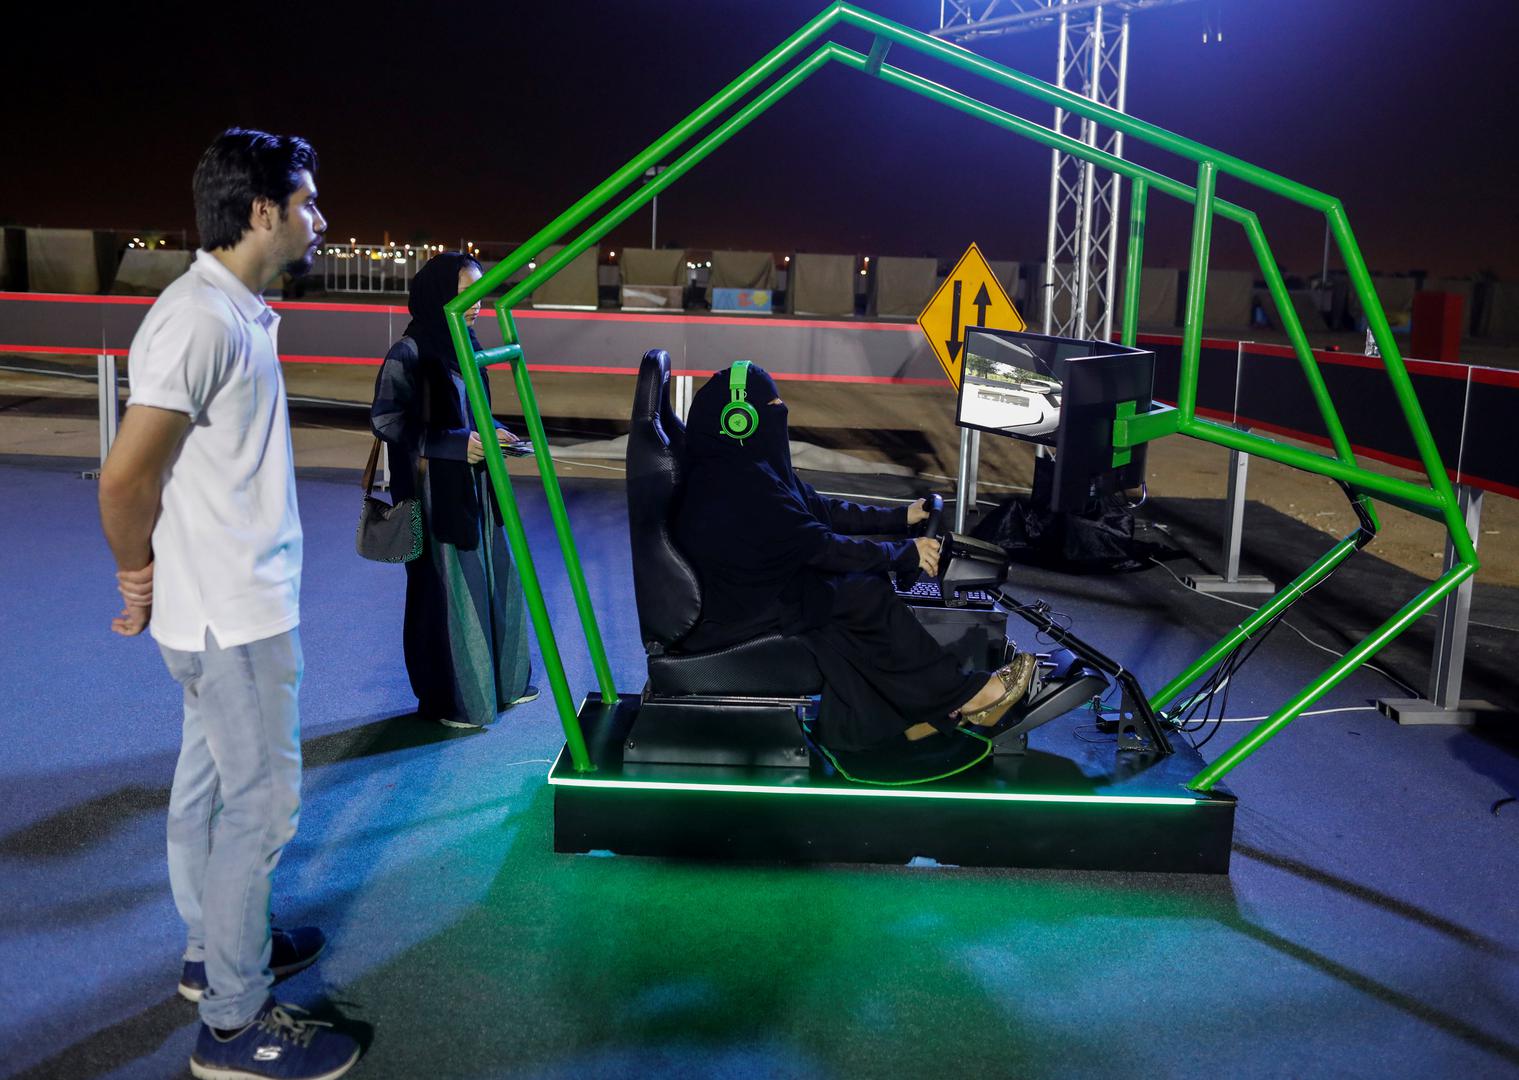 Pripremajući se za ovaj povijesni događaj, saudijske vlasti pokrenule su jučer trodnevnu kampanju "Ufaj se u Boga i vozi" kako bi ohrabrile žene da sjednu za volan i nauče osnovne tehnike vožnje i prometne propise. 